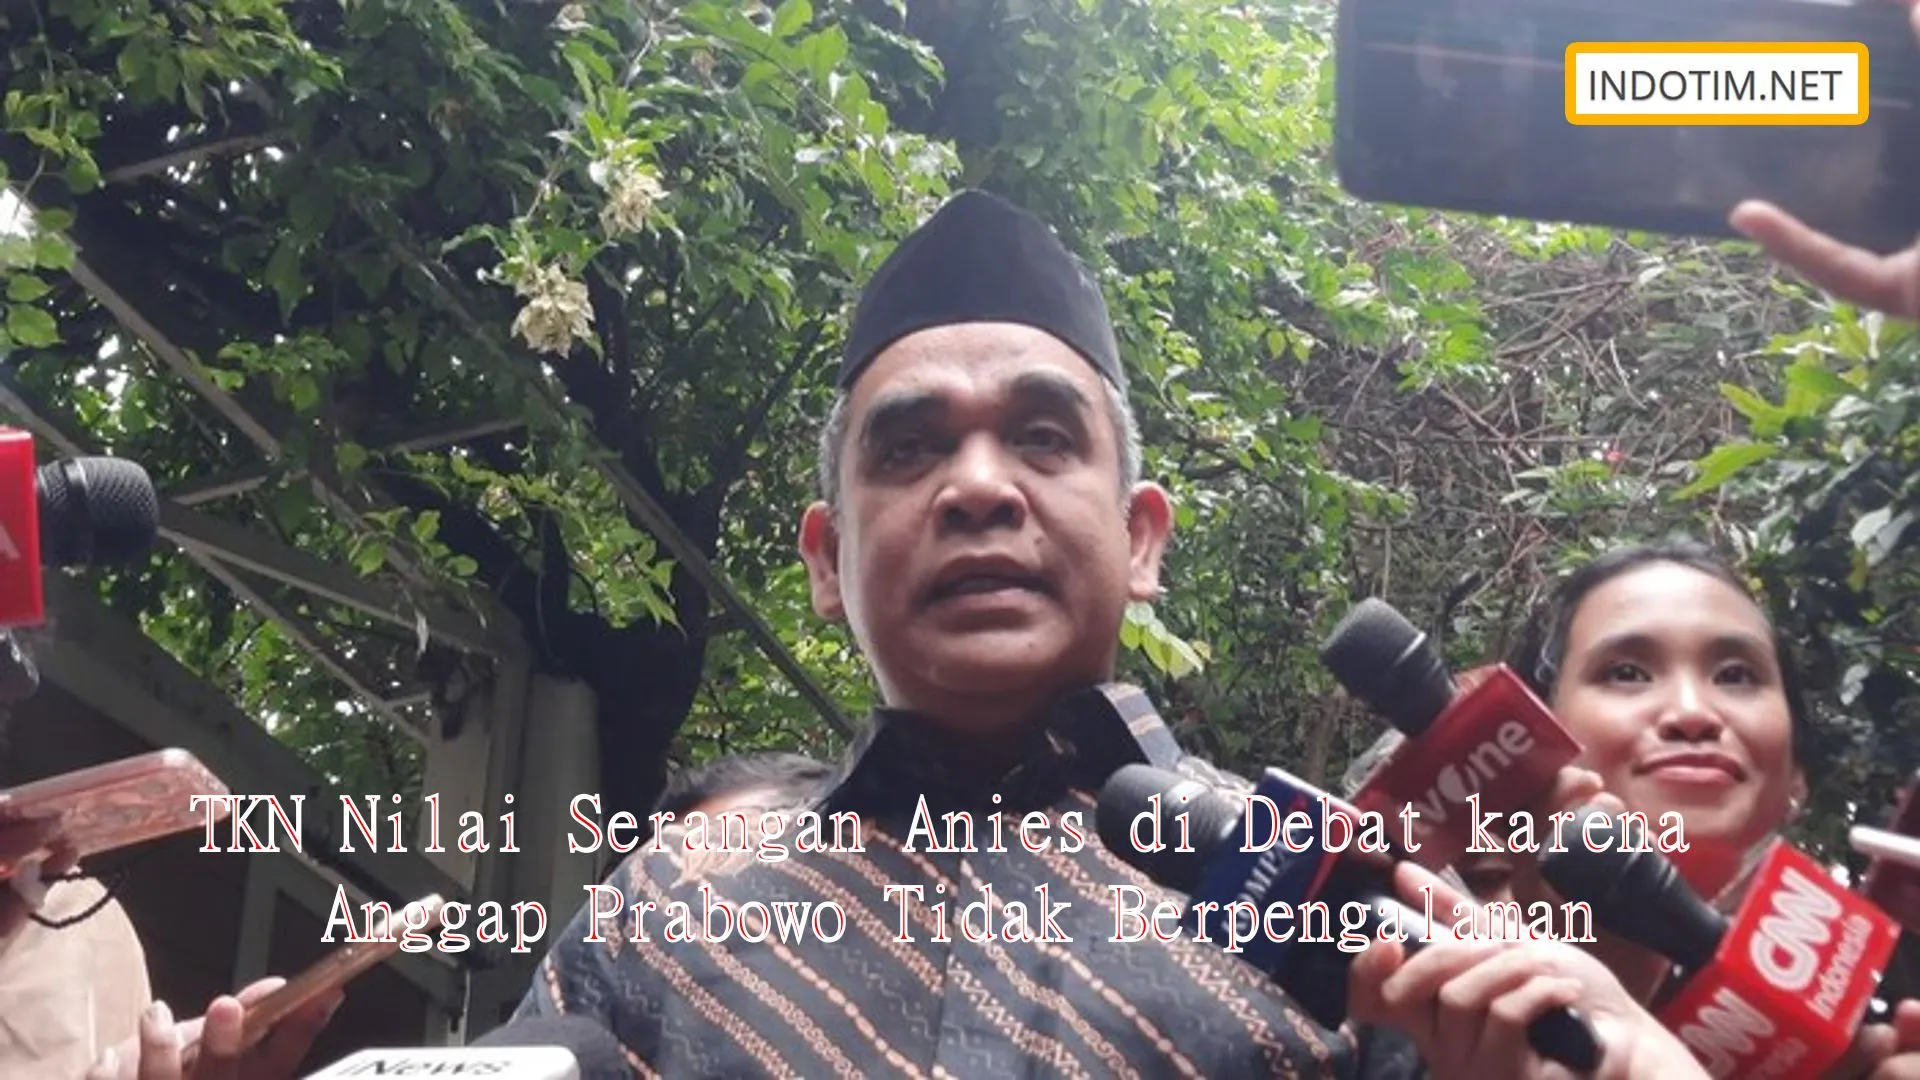 TKN Nilai Serangan Anies di Debat karena Anggap Prabowo Tidak Berpengalaman